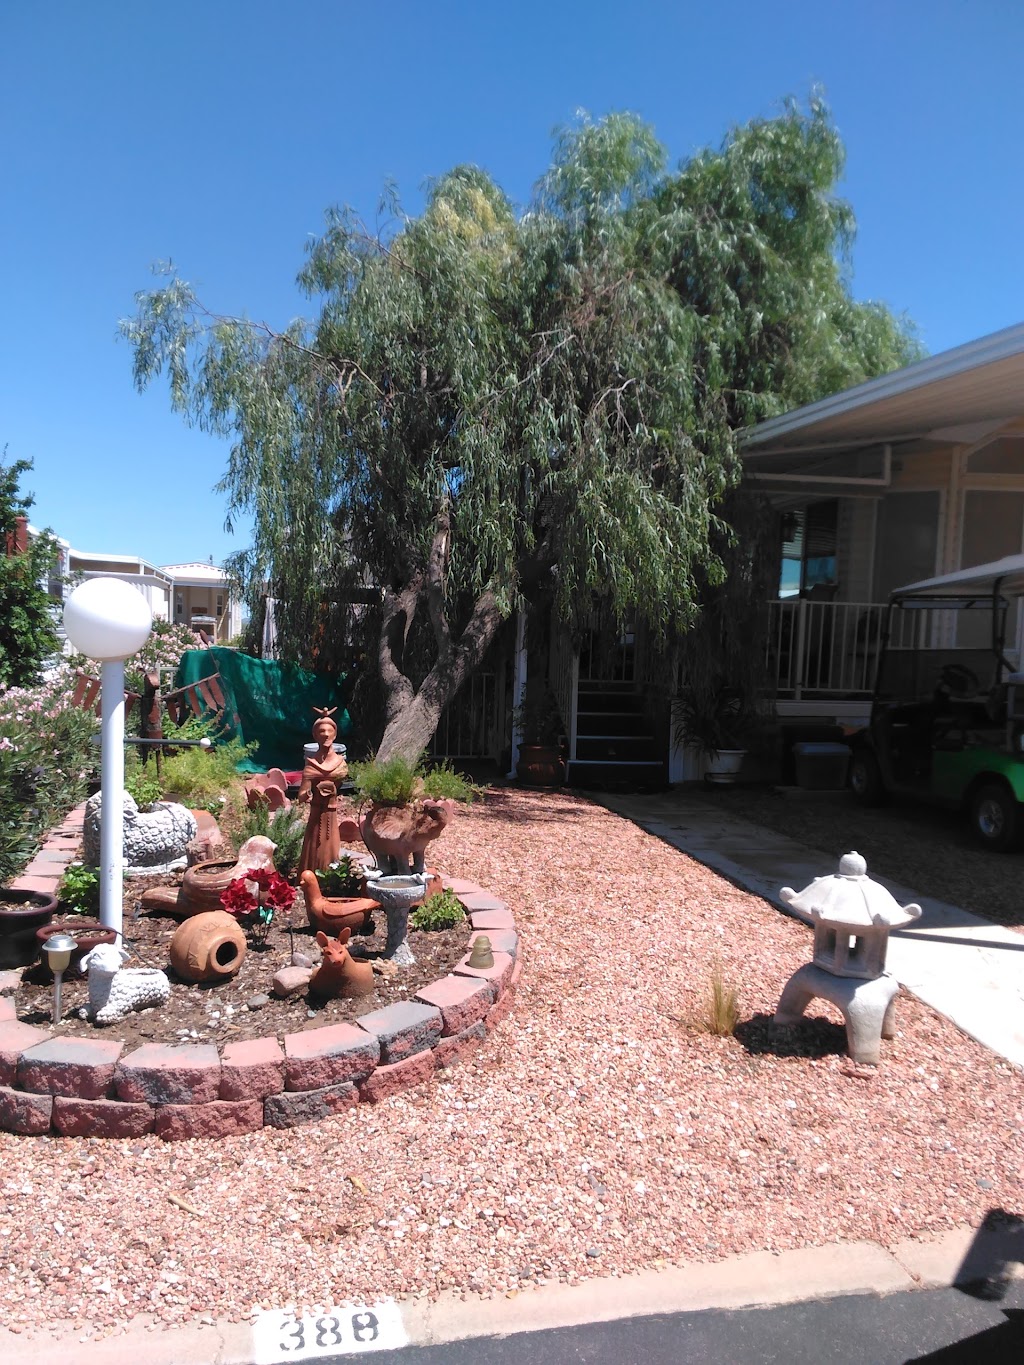 Sunscape RV Resort | 1083 E Sunscape Way, Casa Grande, AZ 85194, USA | Phone: (520) 723-9533